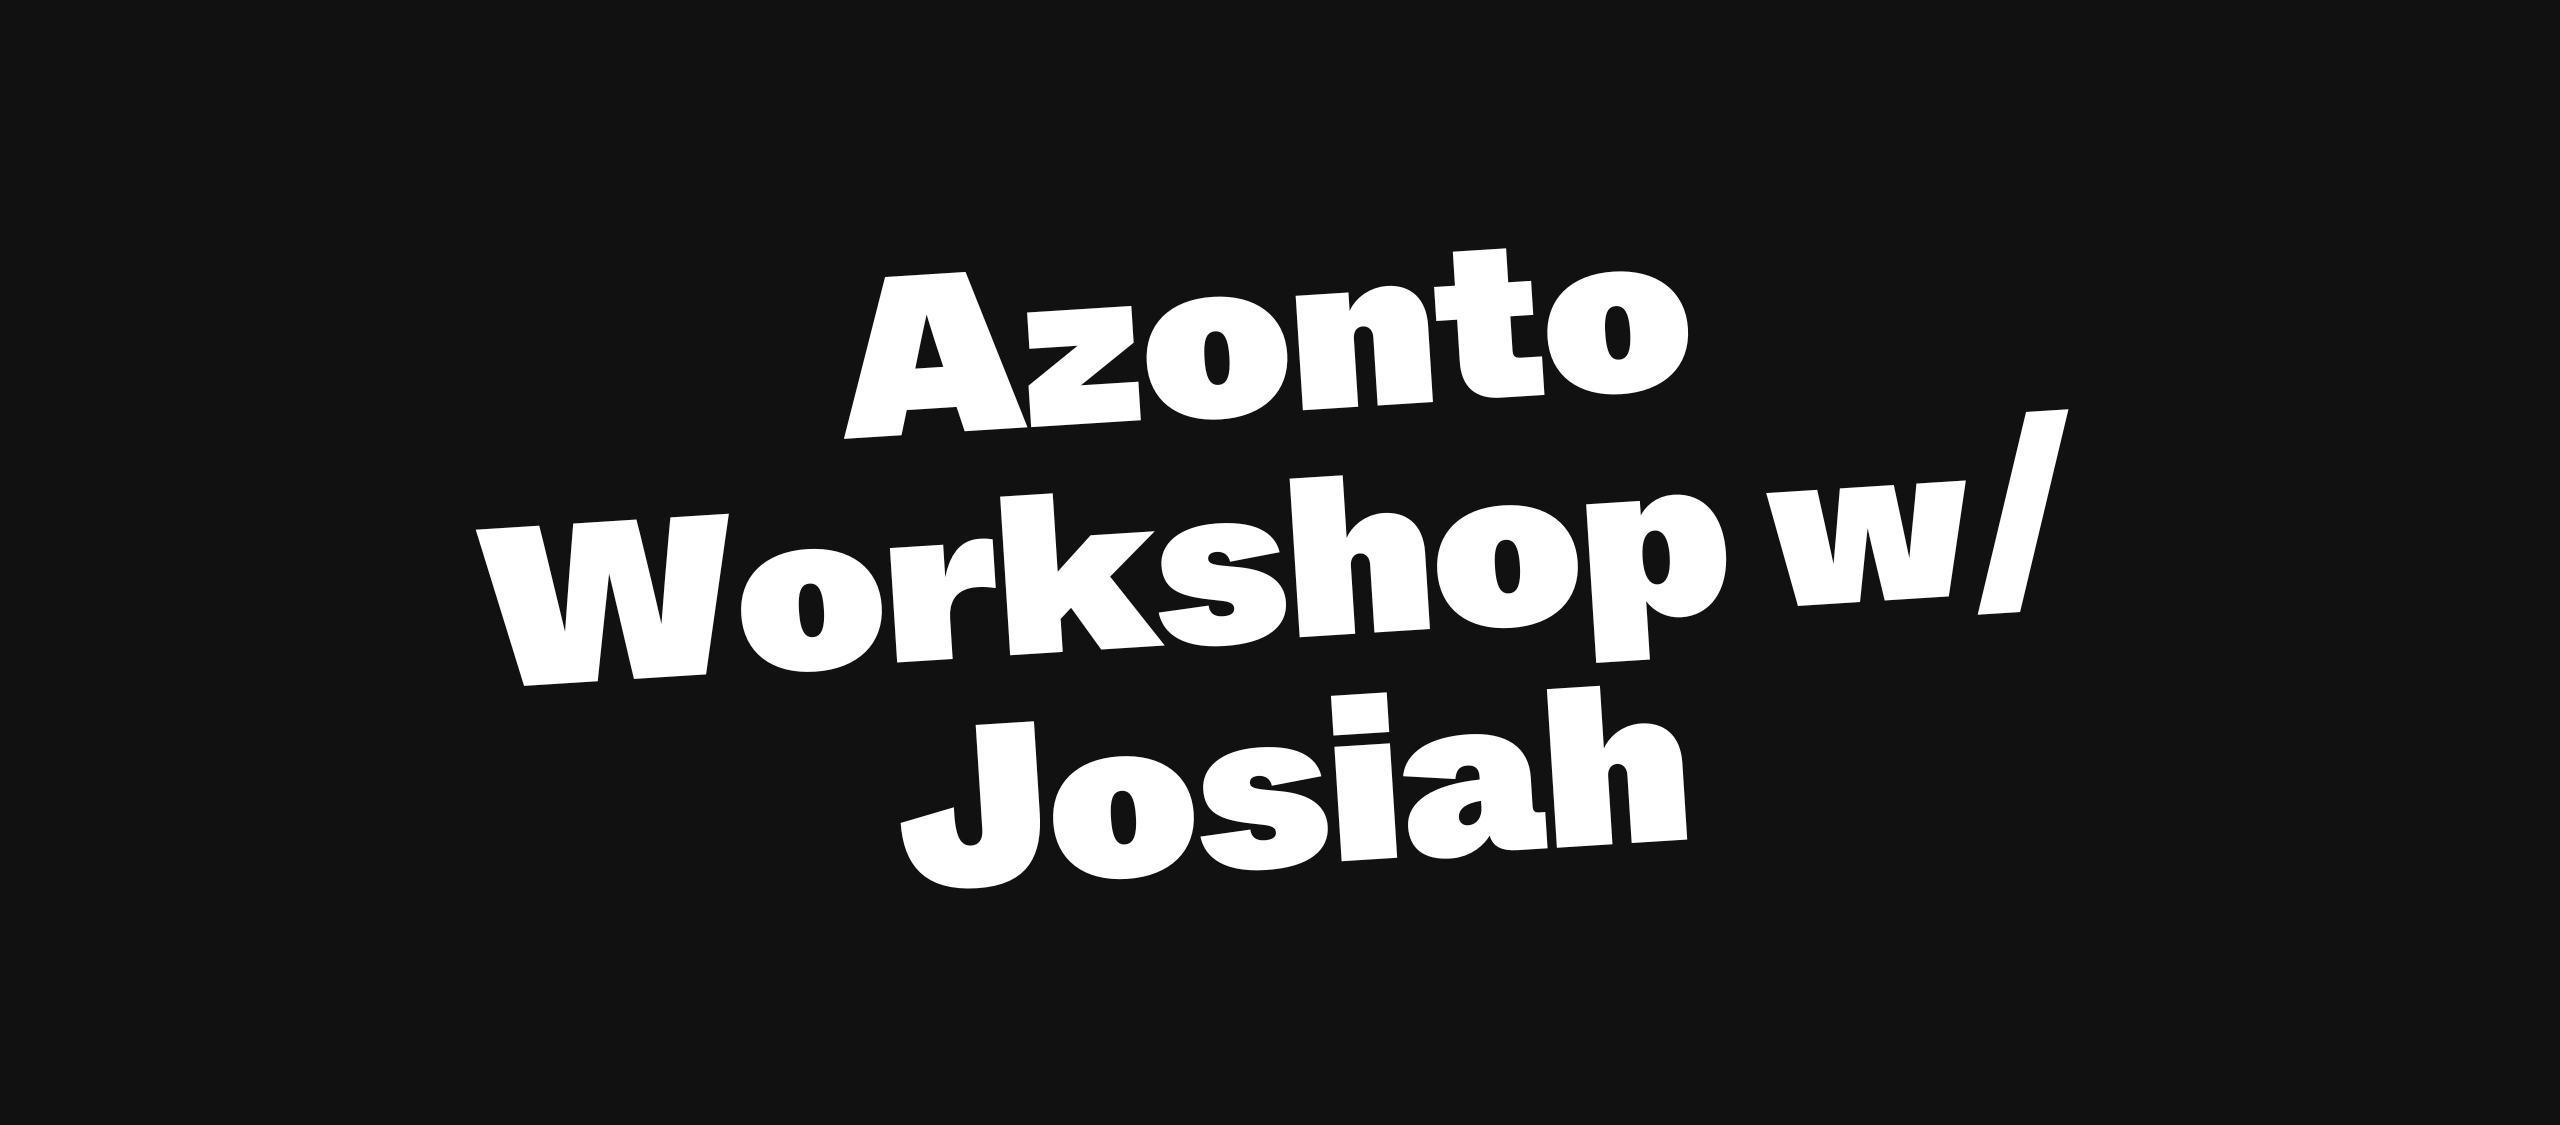 Azonto Workshop w/ Josiah